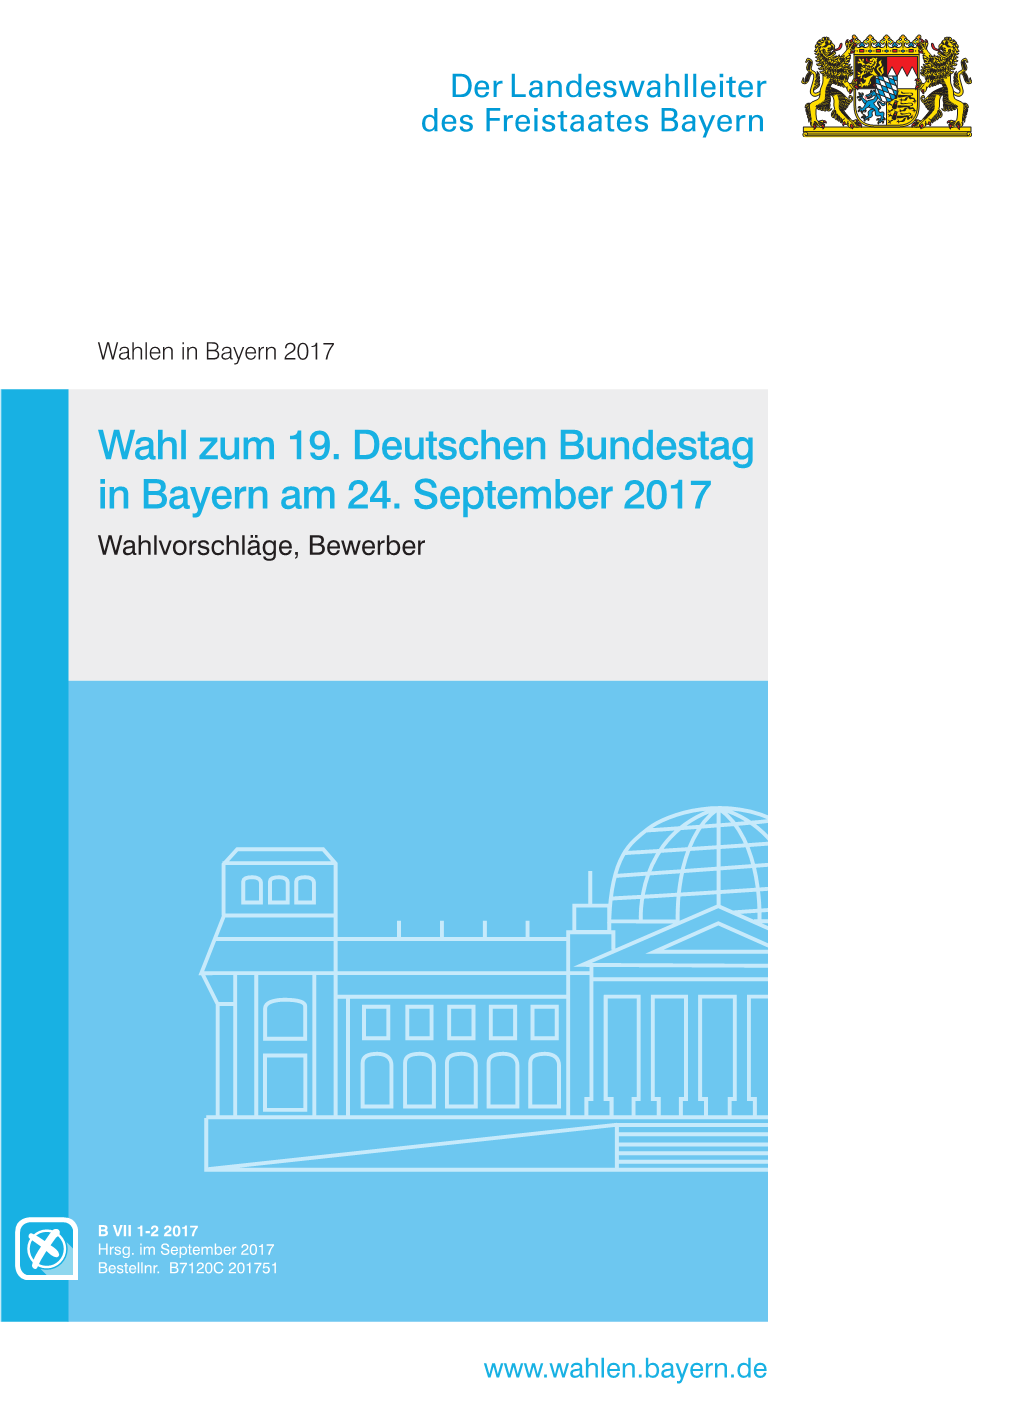 Wahl Zum 19. Deutschen Bundestag in Bayern Am 24. September 2017 Wahlvorschläge, Bewerber